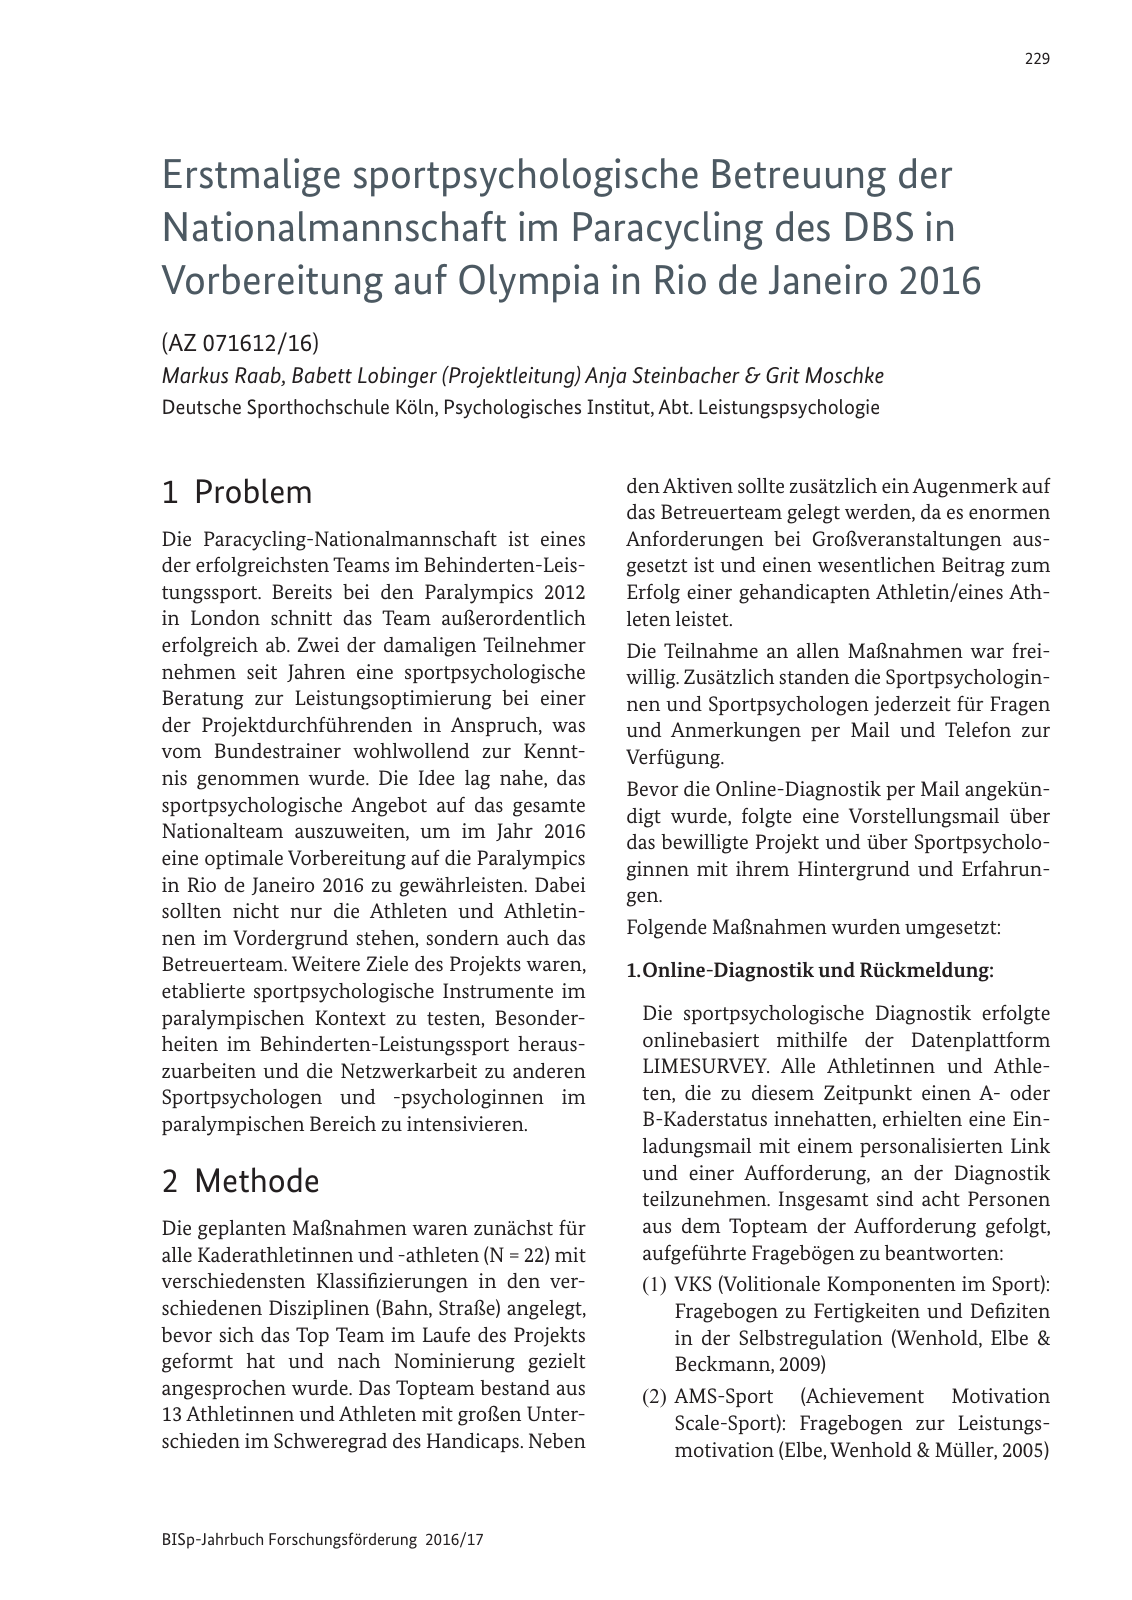 Vorschau BISp-Jahrbuch 2016/2017 Seite 231